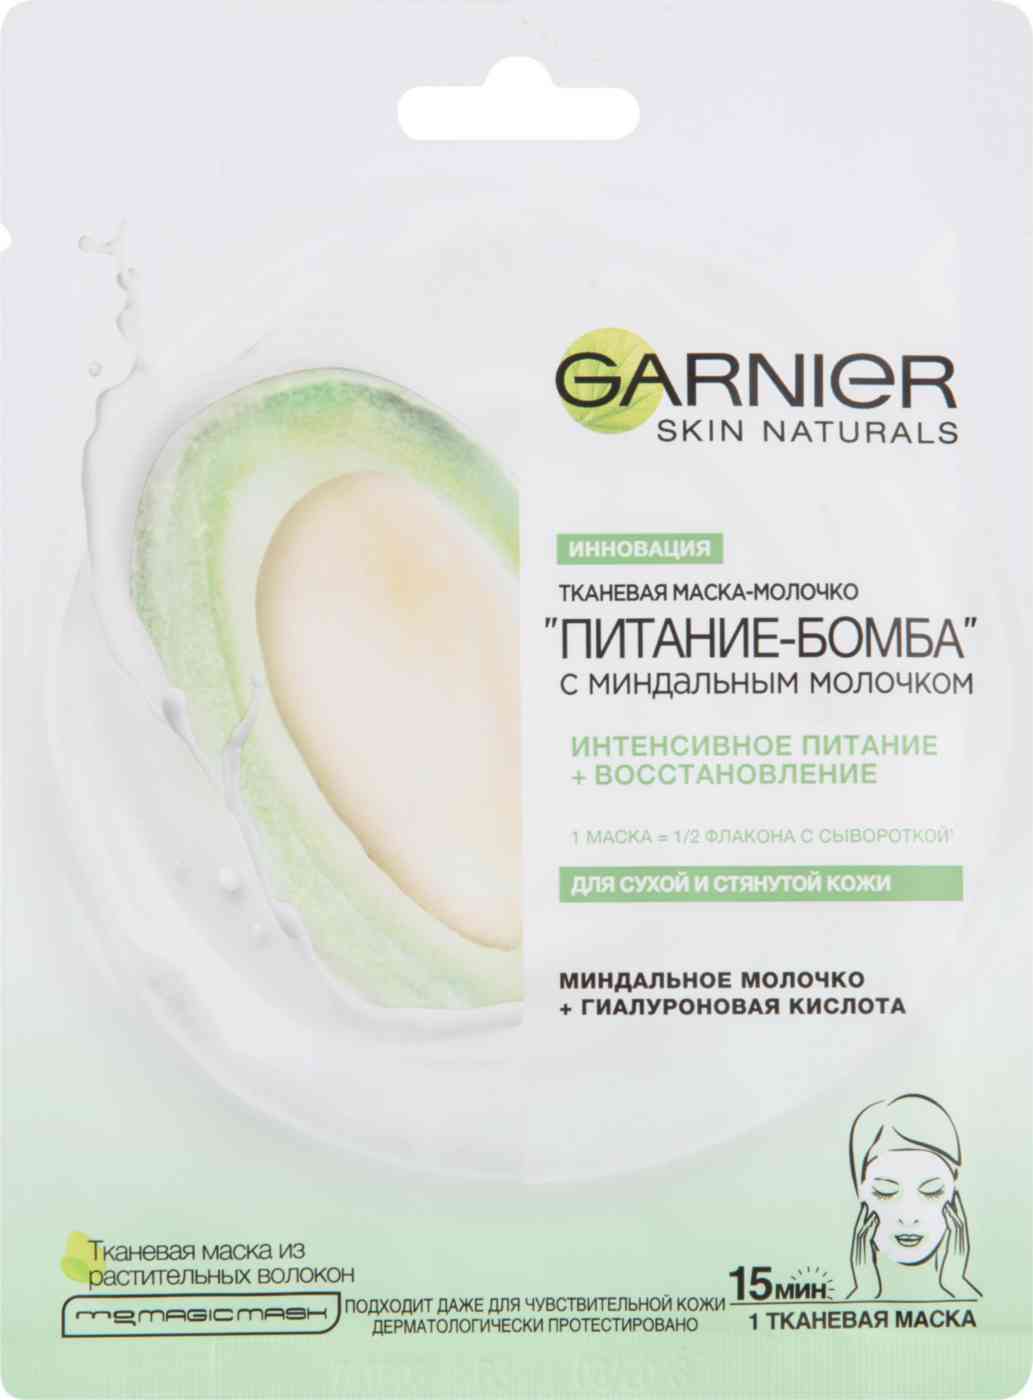 маска-молочко для лица тканевая garnier питание-бомба миндальное молочко + гиалуроновая кислота